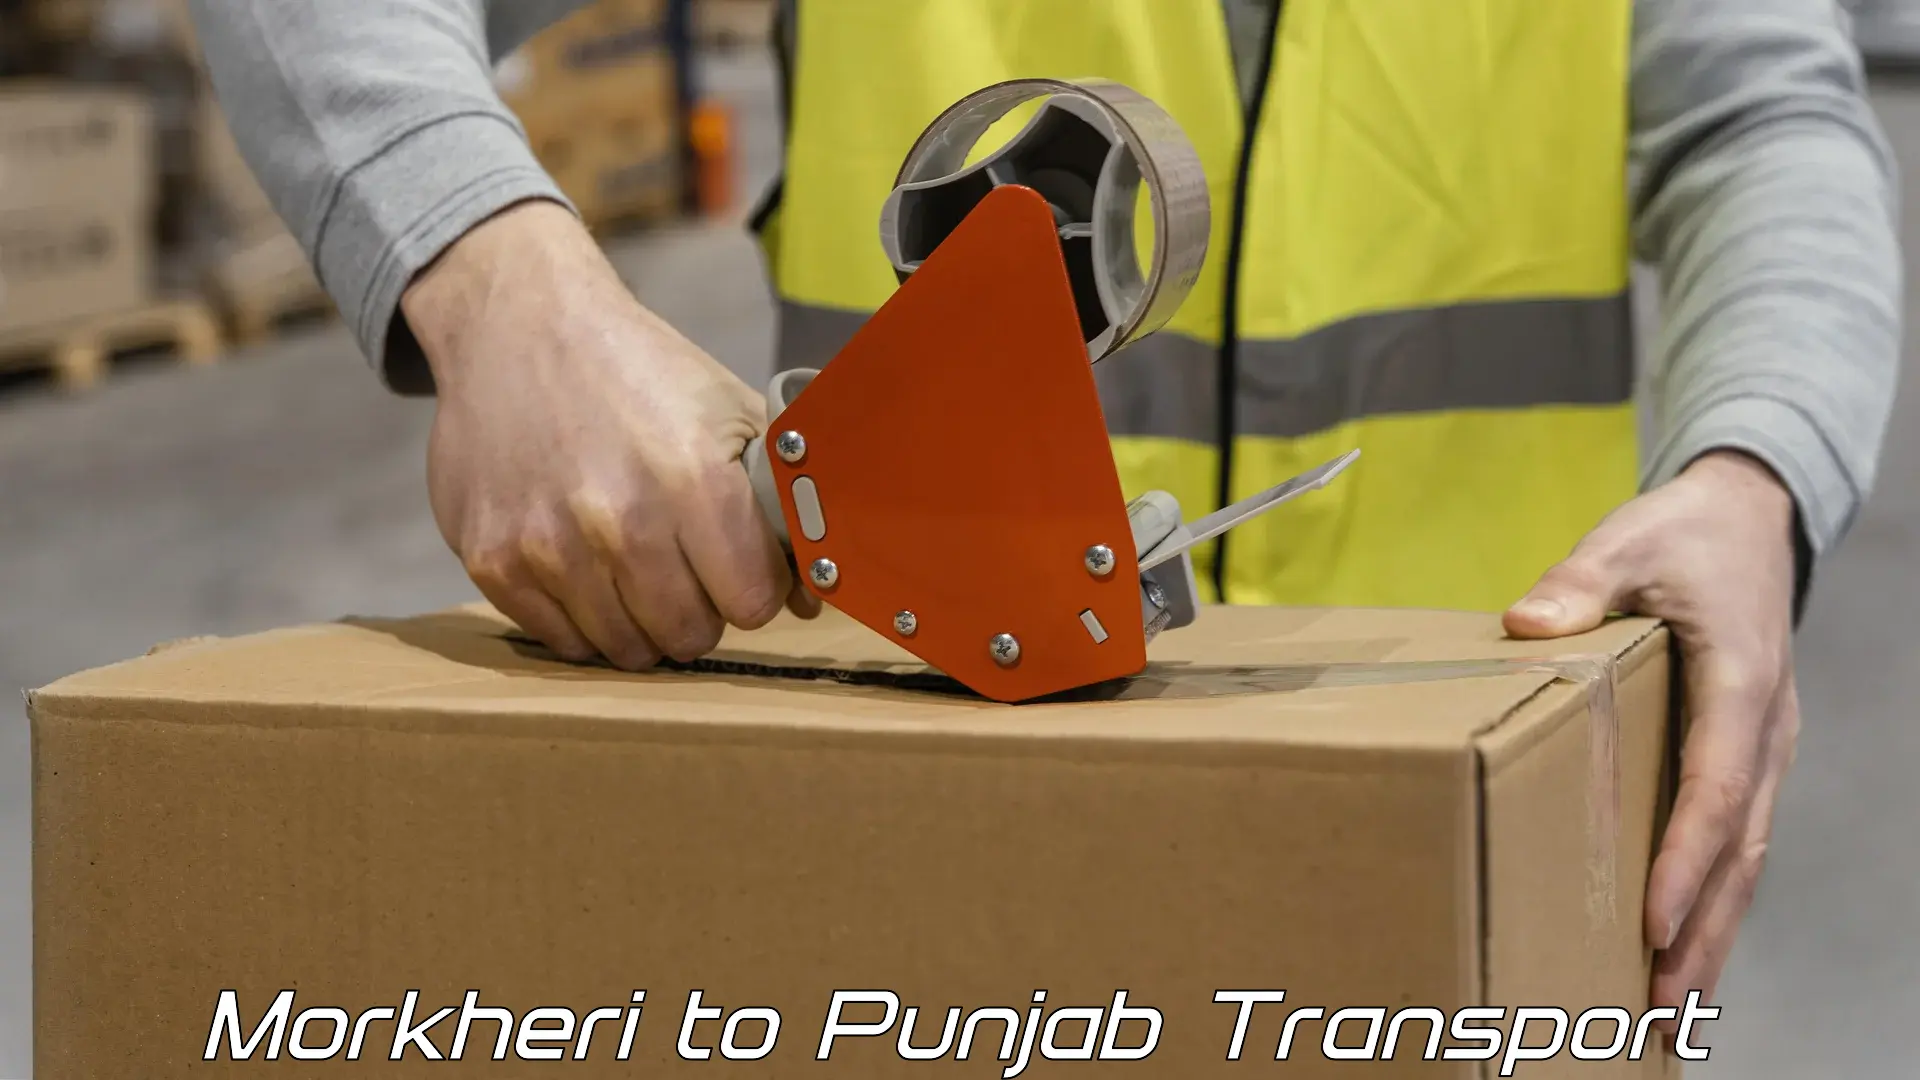 Logistics transportation services Morkheri to Punjab